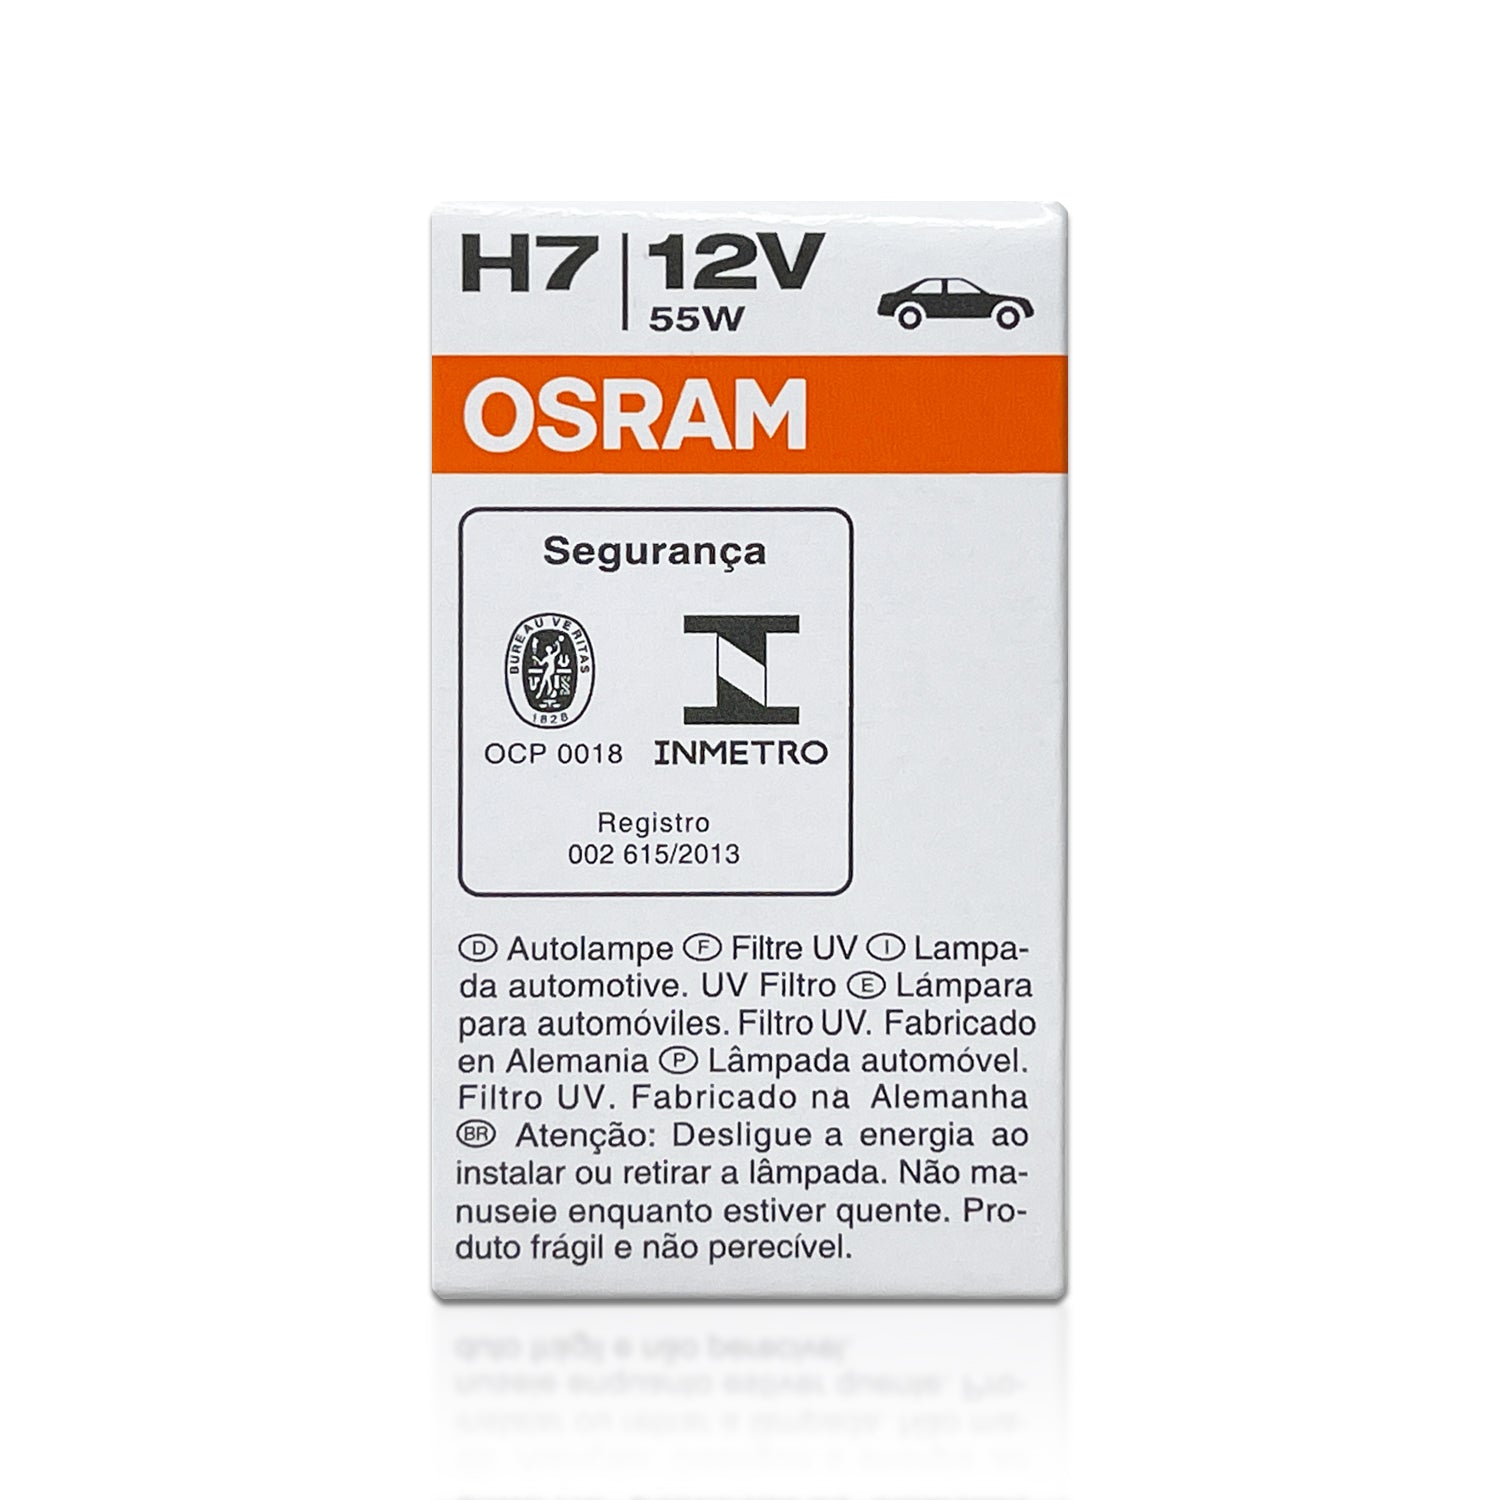 Osram H7 12V 55W - 64210L+ Long Life Original Line Automotive Bulb